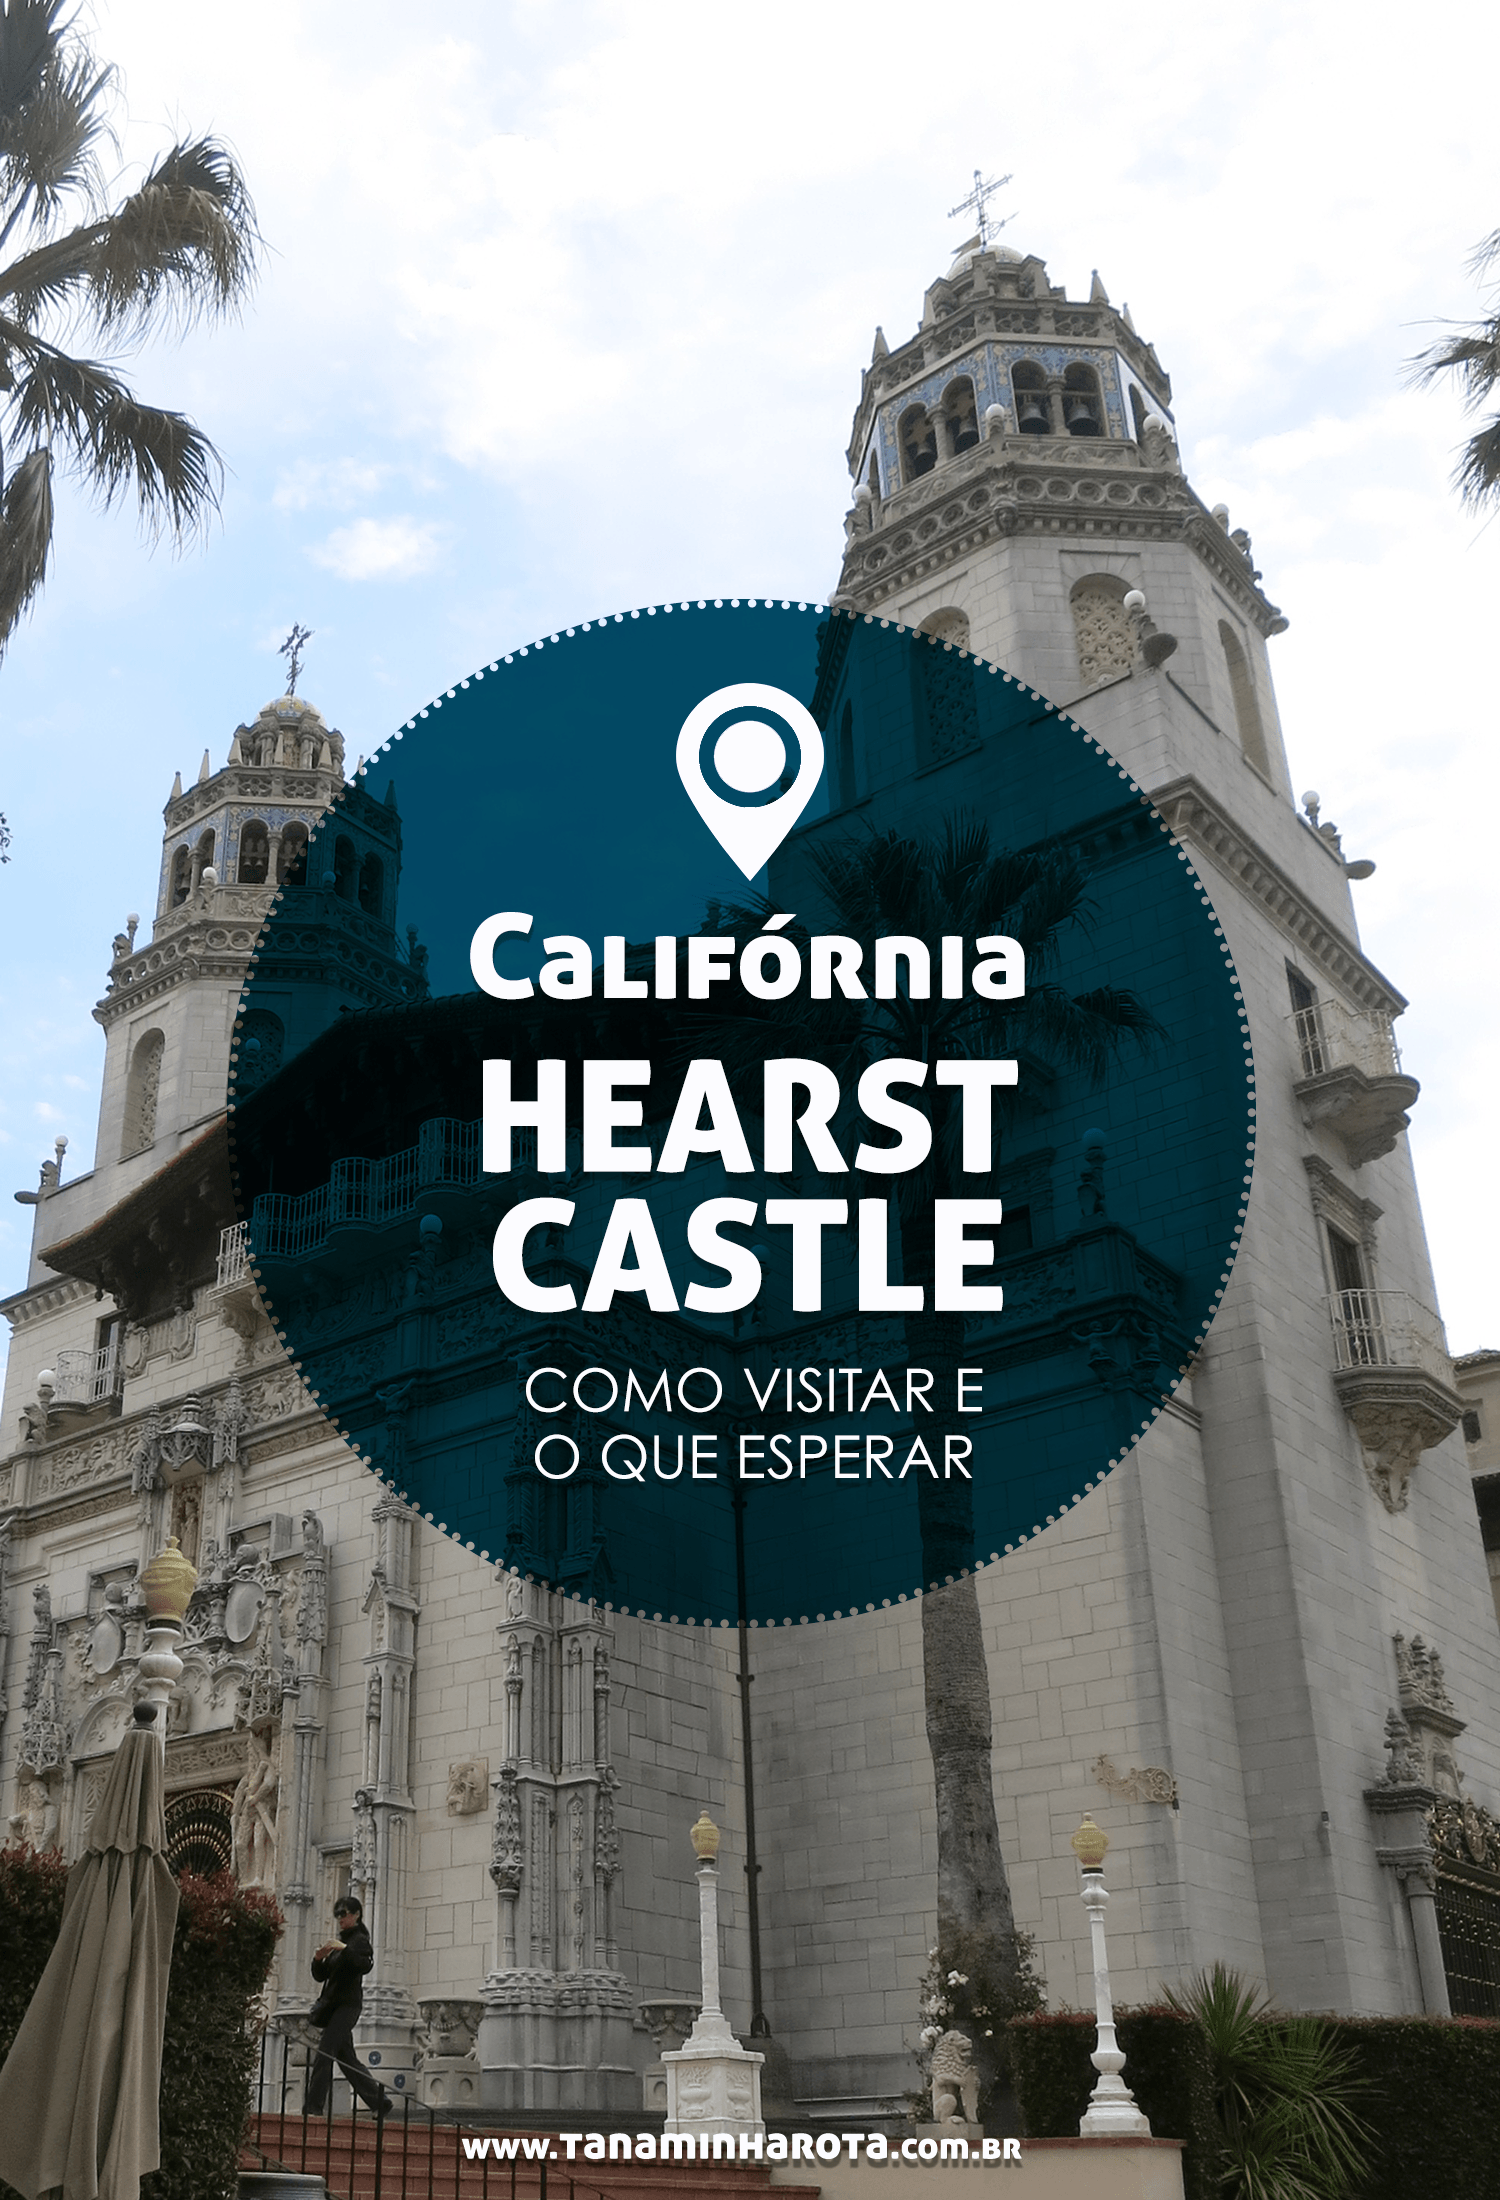 Descubra tudo sobre o Hearst Castle, uma das atrações imperdíveis na Califórnia para quem ama castelos! #california #castelos #viagem